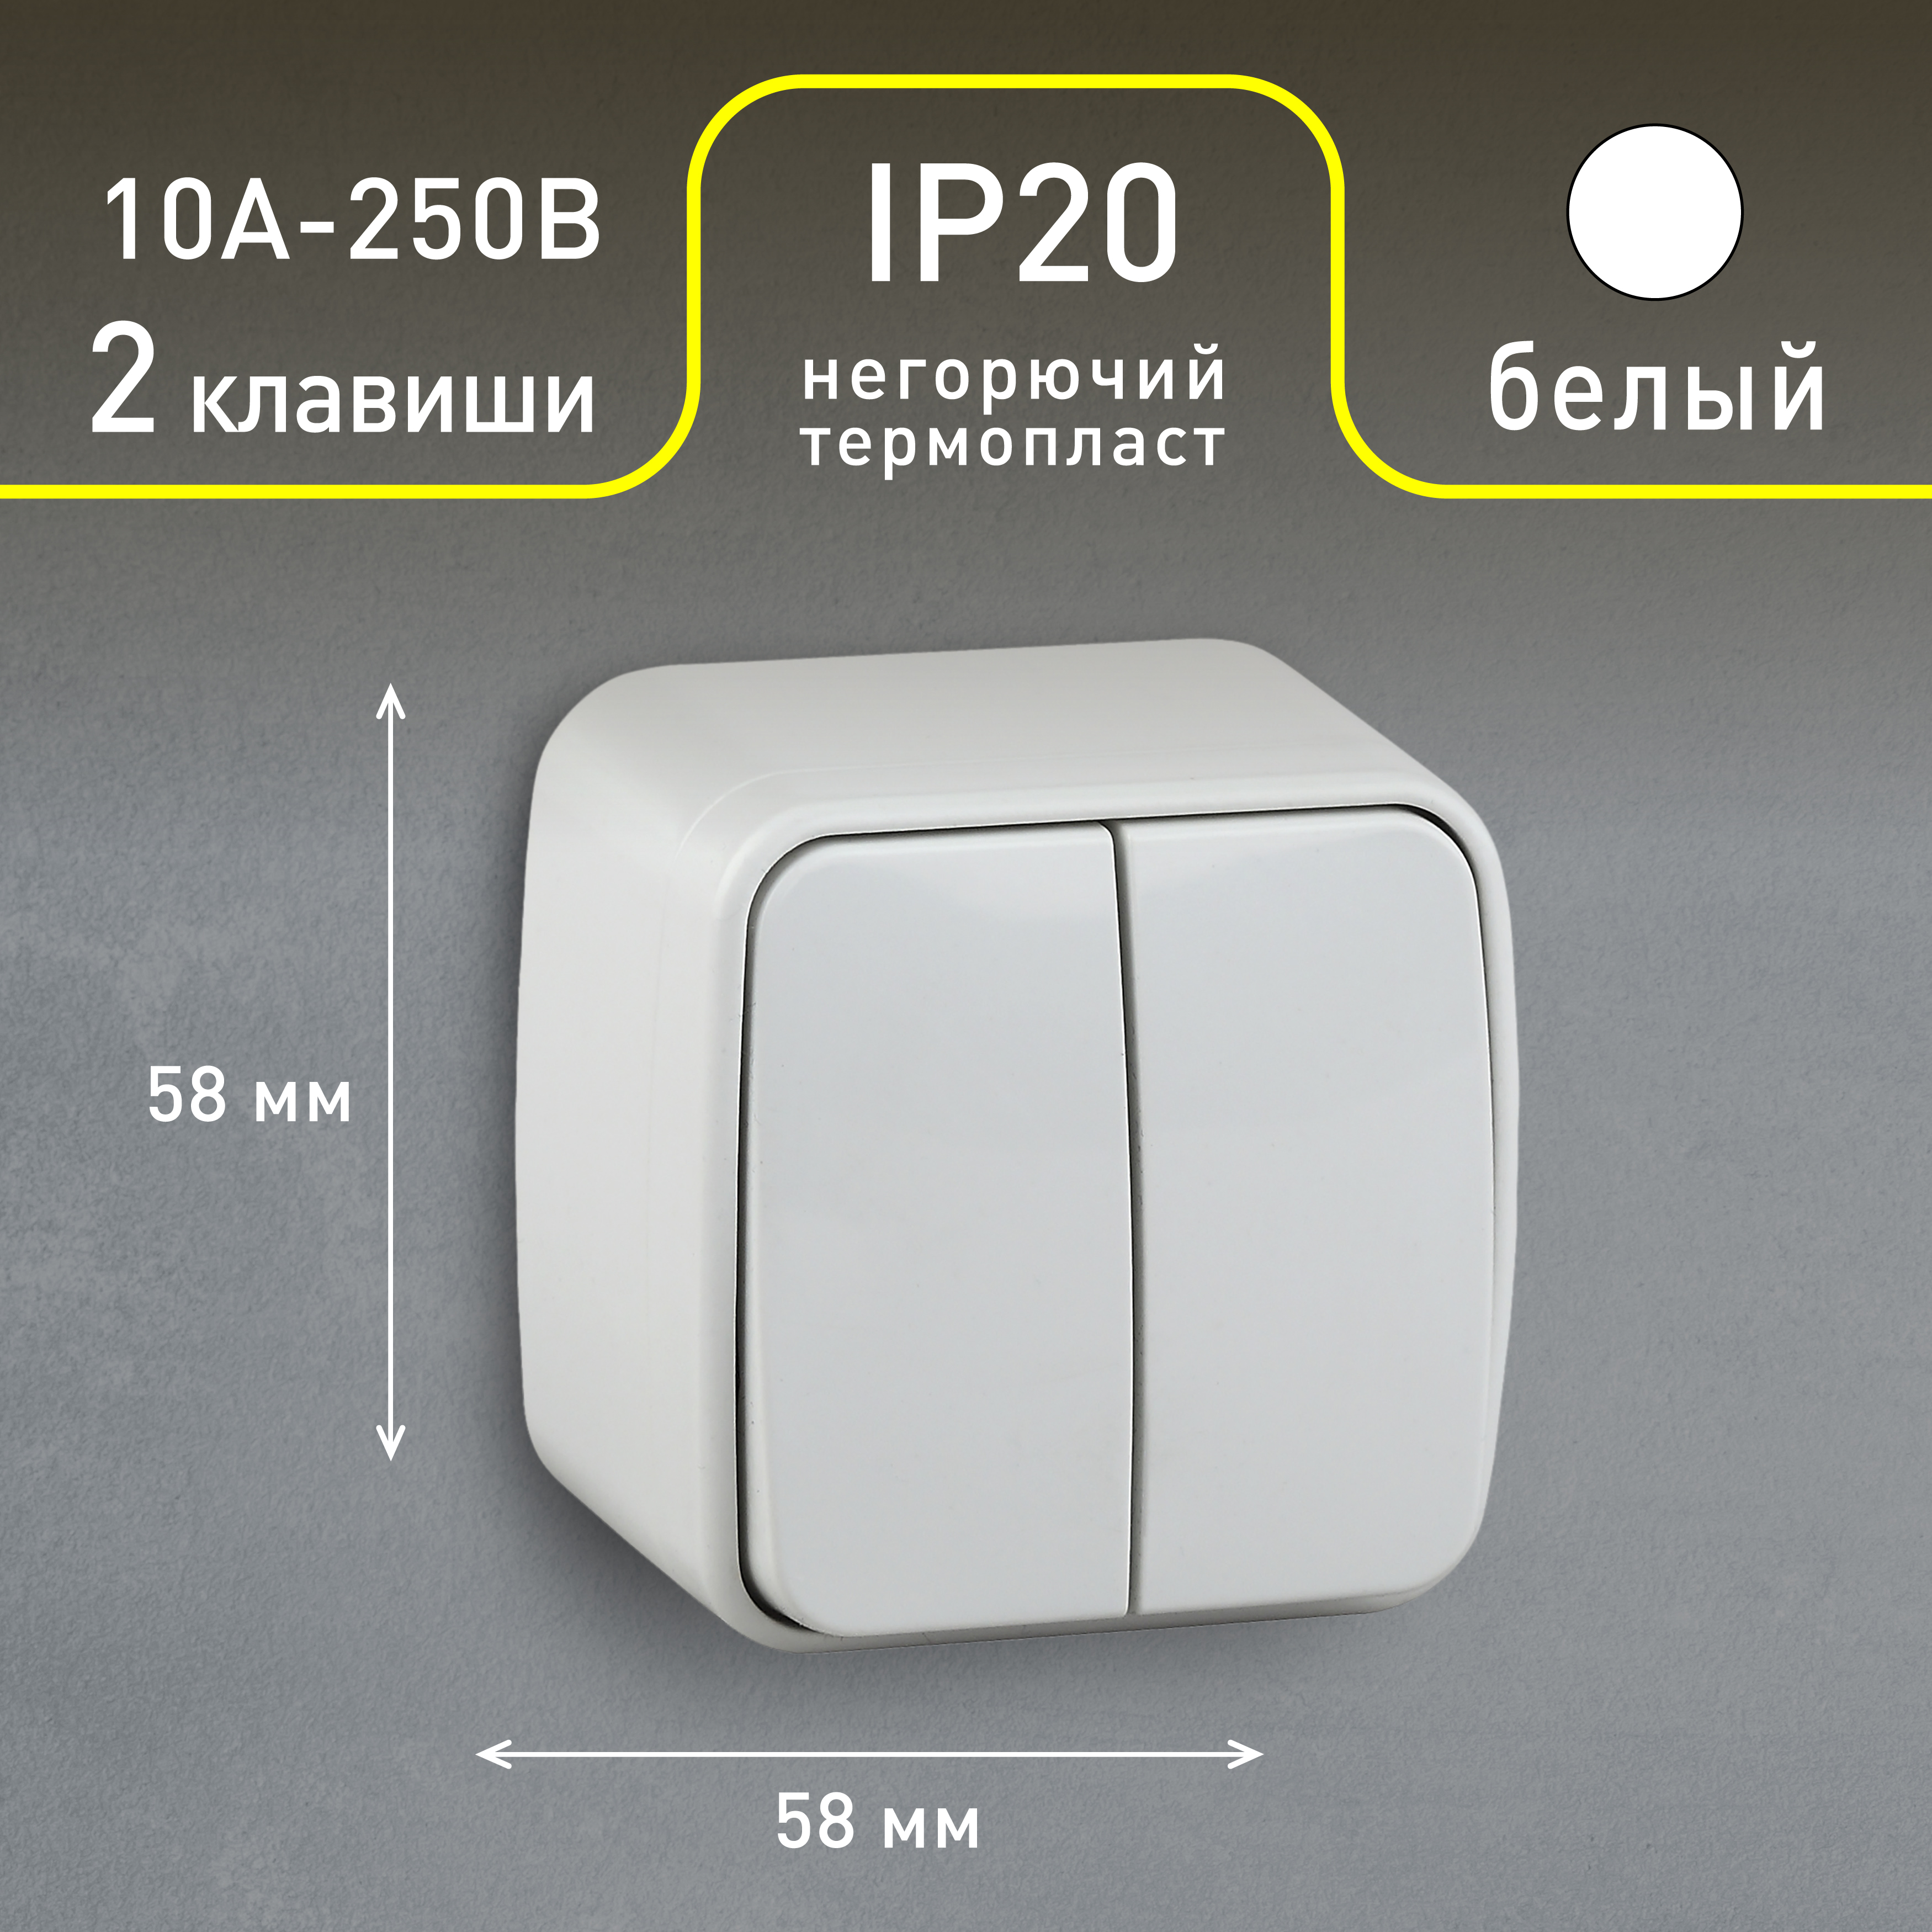 3-104-01 Intro Выключатель двойной, 10А-250В, IP20, ОУ, Polo, белый (18/360/4320)